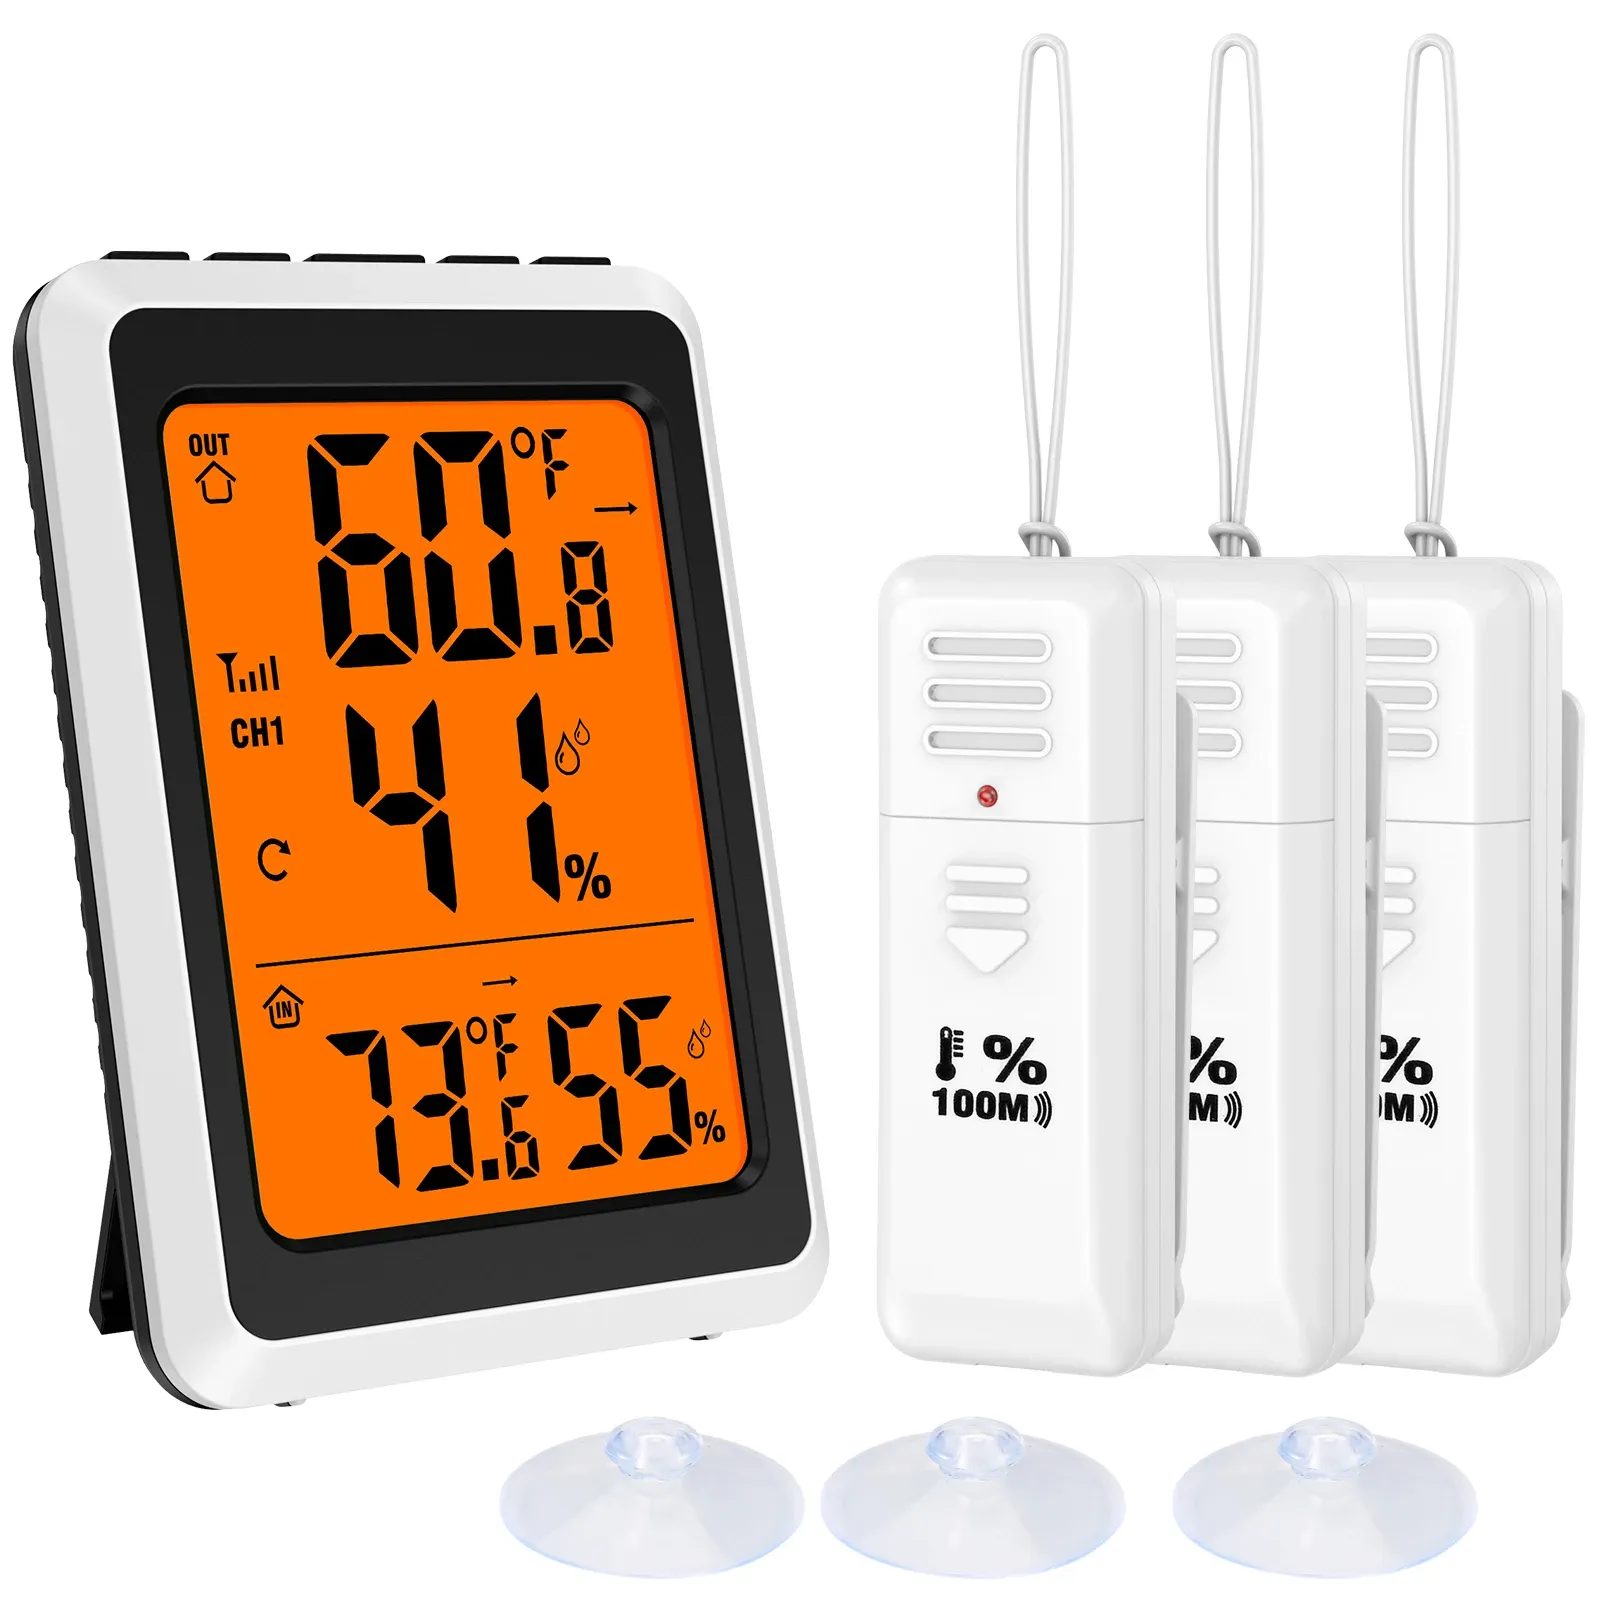 Giełki termometr zewnętrzny higrometr Home bezprzewodowy cyfrowy termometr manom wilgotność Monitor temperatury z czujnikami 3PCS